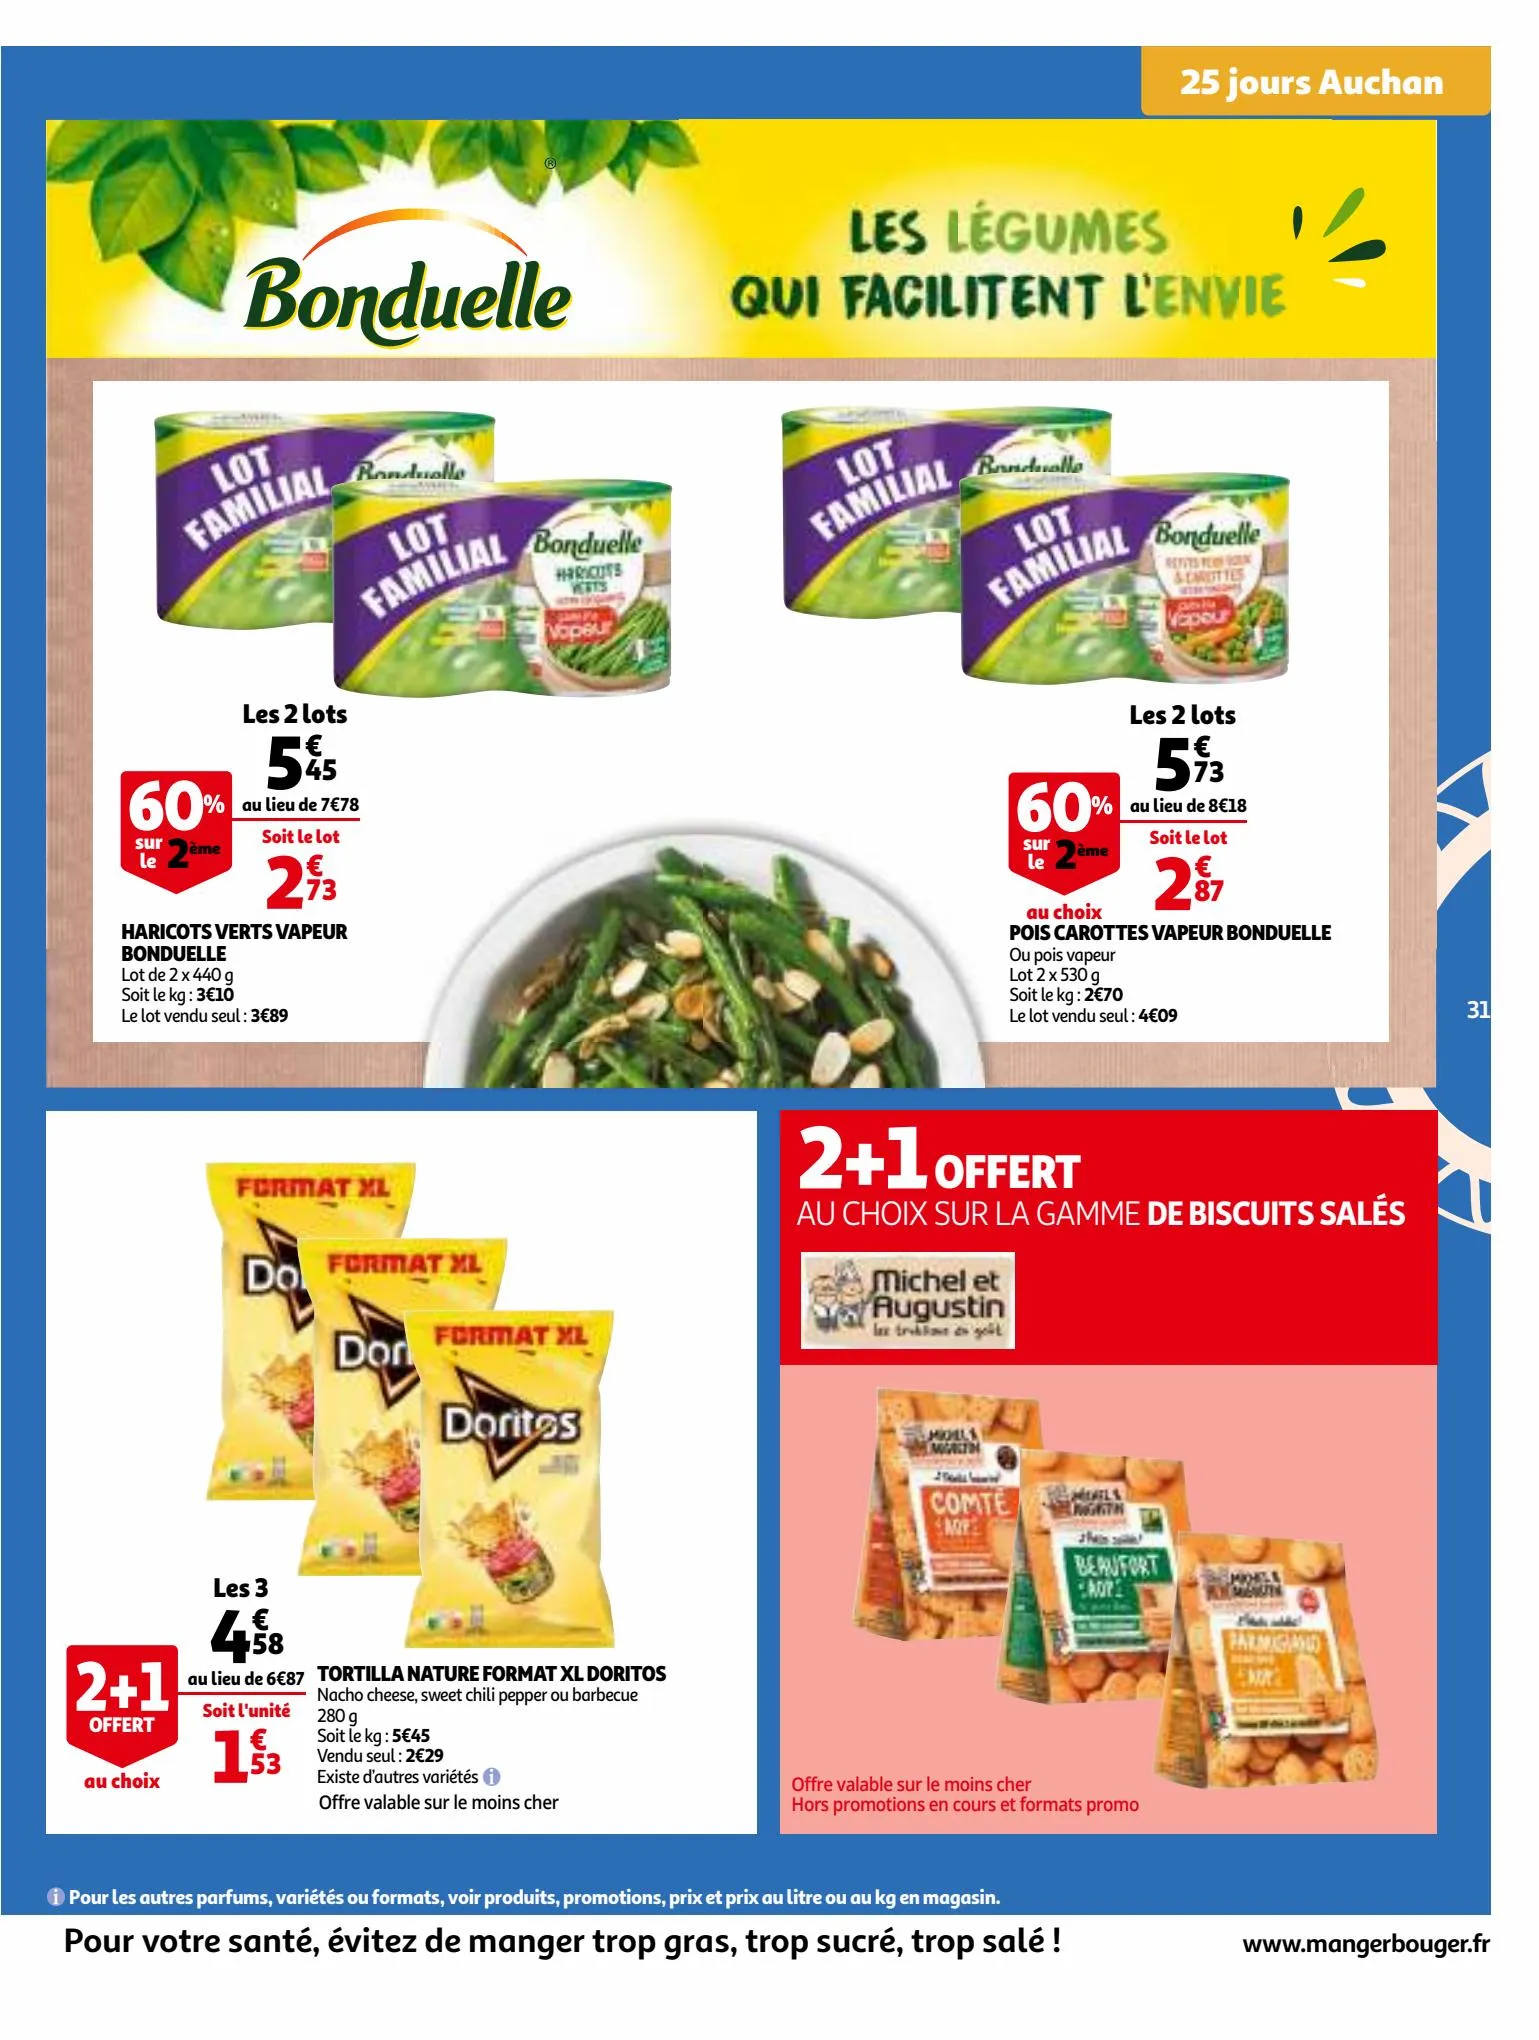 Catalogue 25 Jours Auchan, page 00031